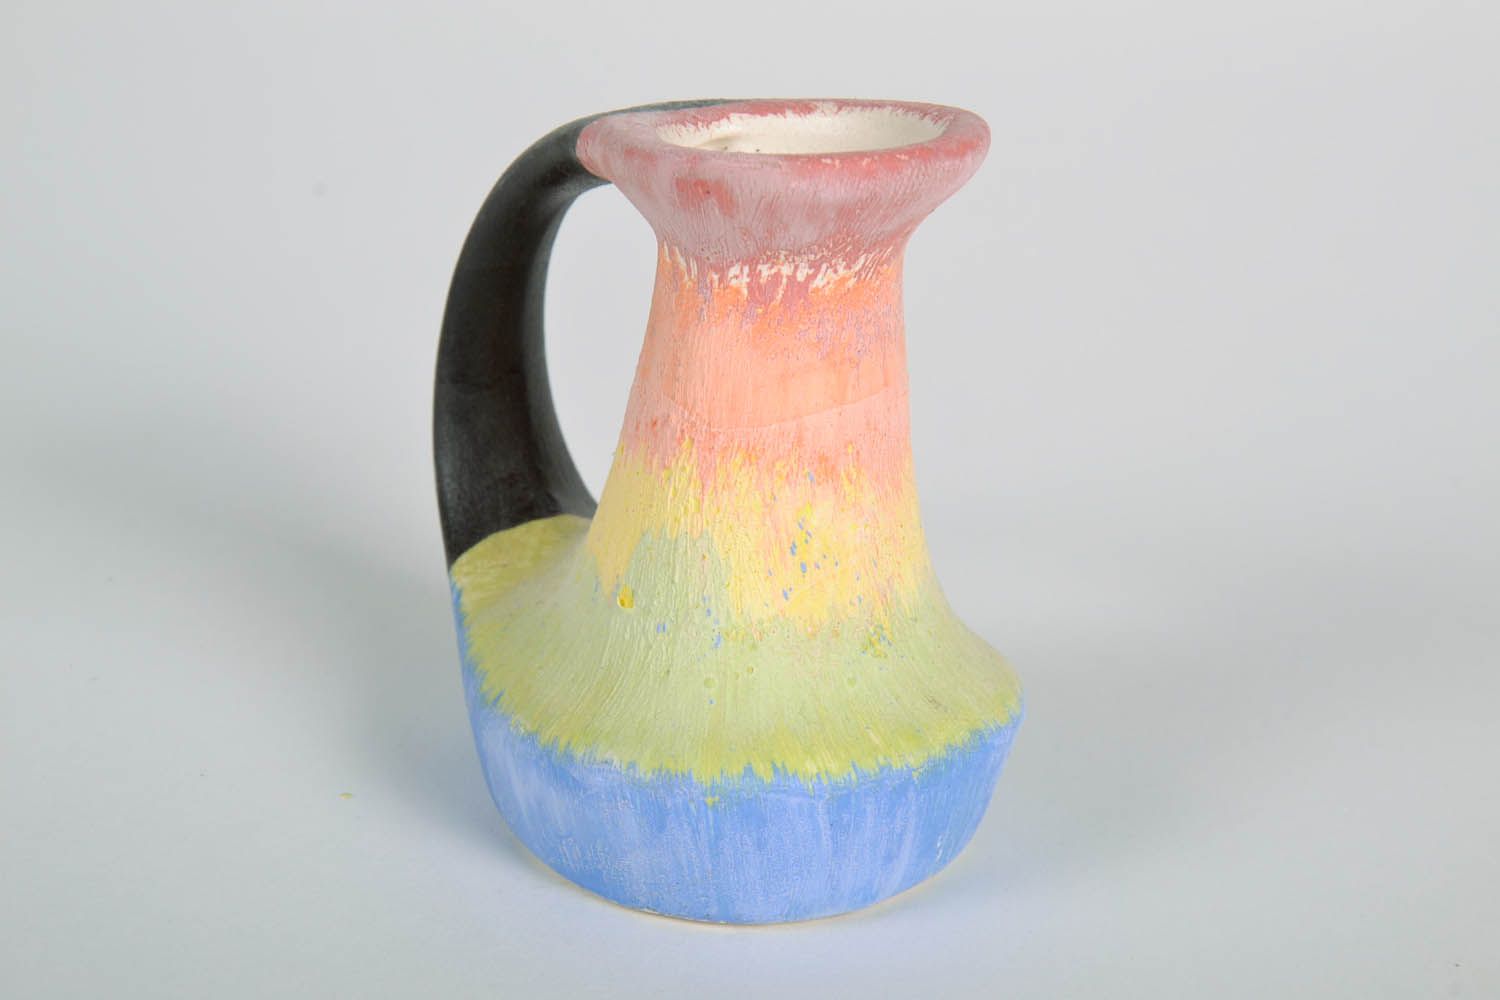 10 oz clay multicolored jug 0,32 lb photo 5